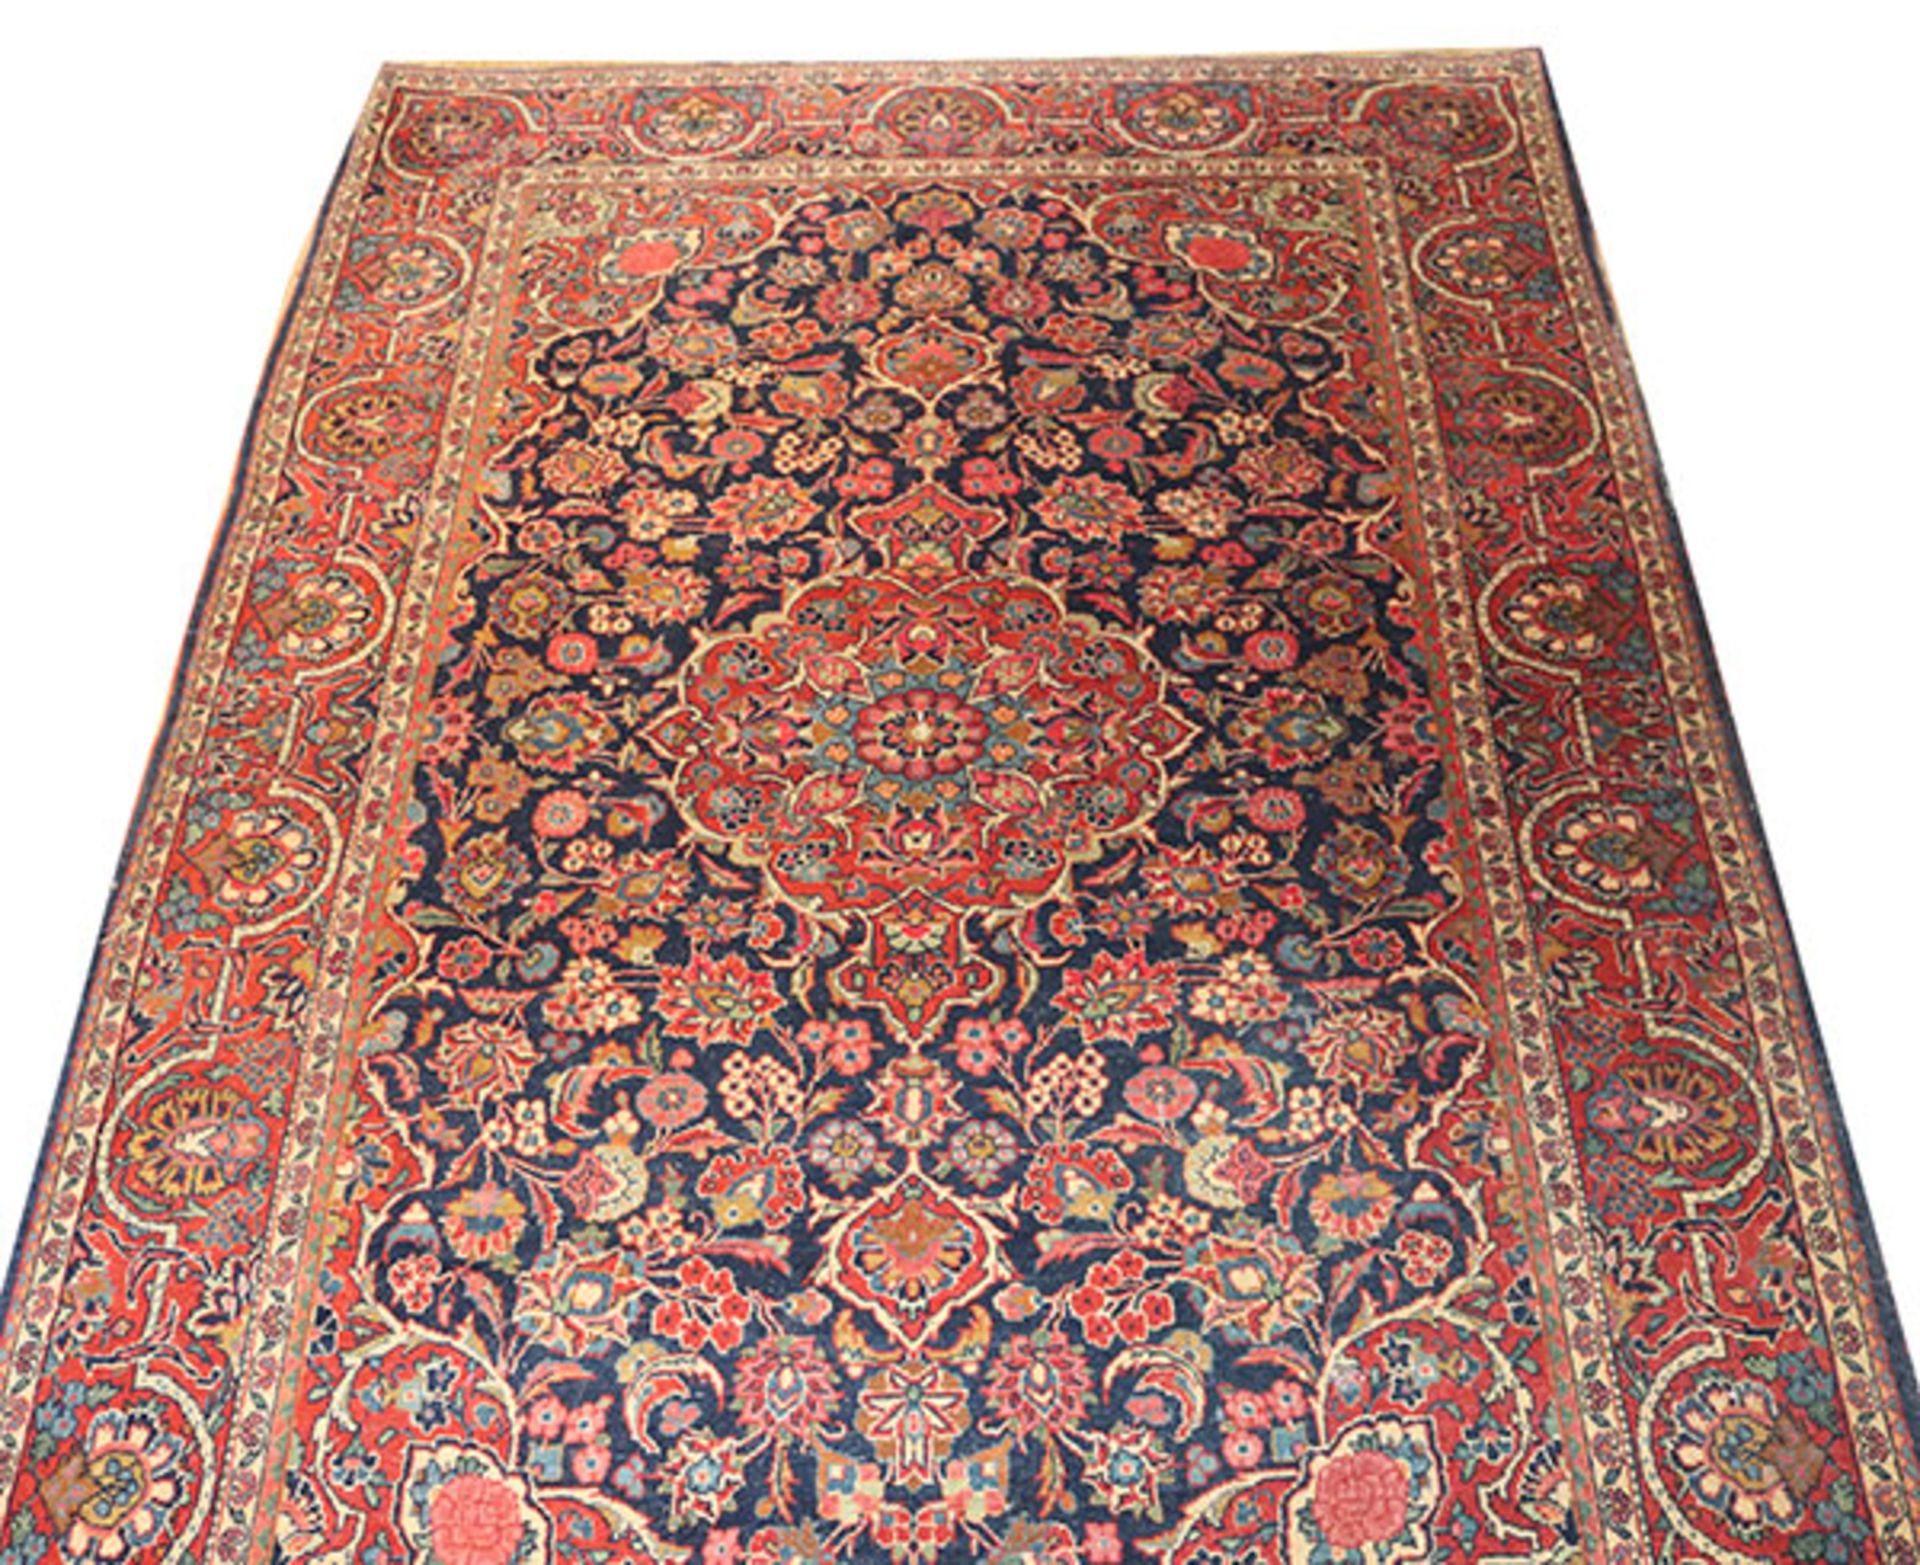 Teppich, Bidjar, blau/rot/bunt, Gebrauchsspuren, teils abgetreten und beschädigt, 199,5 cm x 132,5